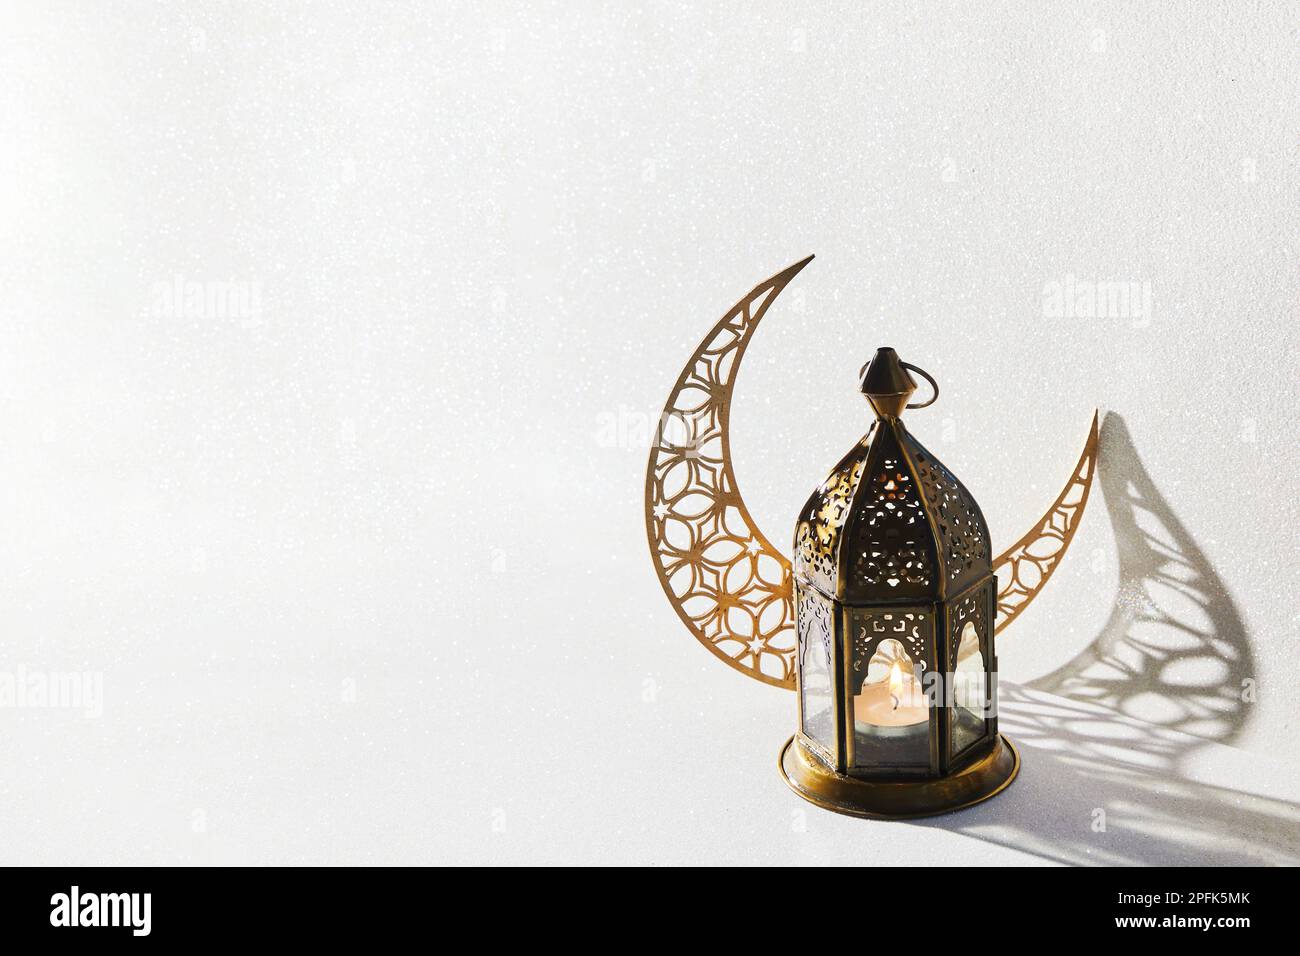 Le mois Saint musulman Ramadan Kareem - Lanterne arabe ornementale avec bougie en feu. Banque D'Images